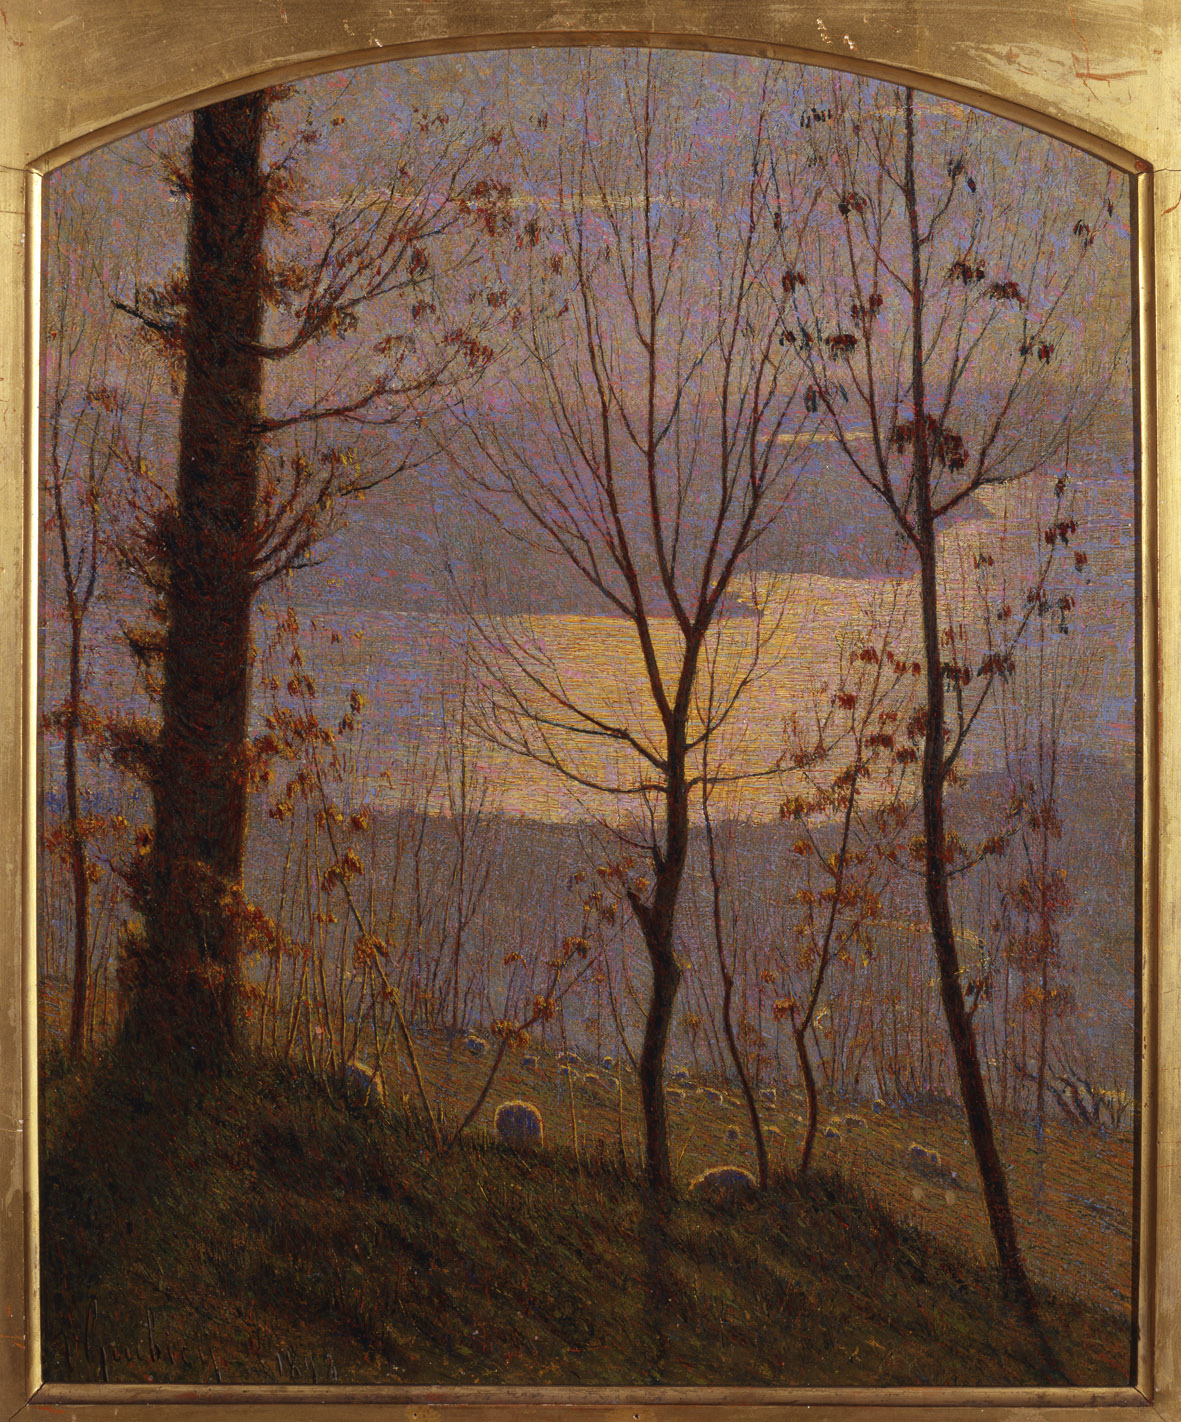 Vittore Grubicy de Dragon, Inverno (1898; olio su tela, 47,1 x 39,5 cm; Venezia, Galleria Internazionale d'Arte Moderna Ca' Pesaro)
 